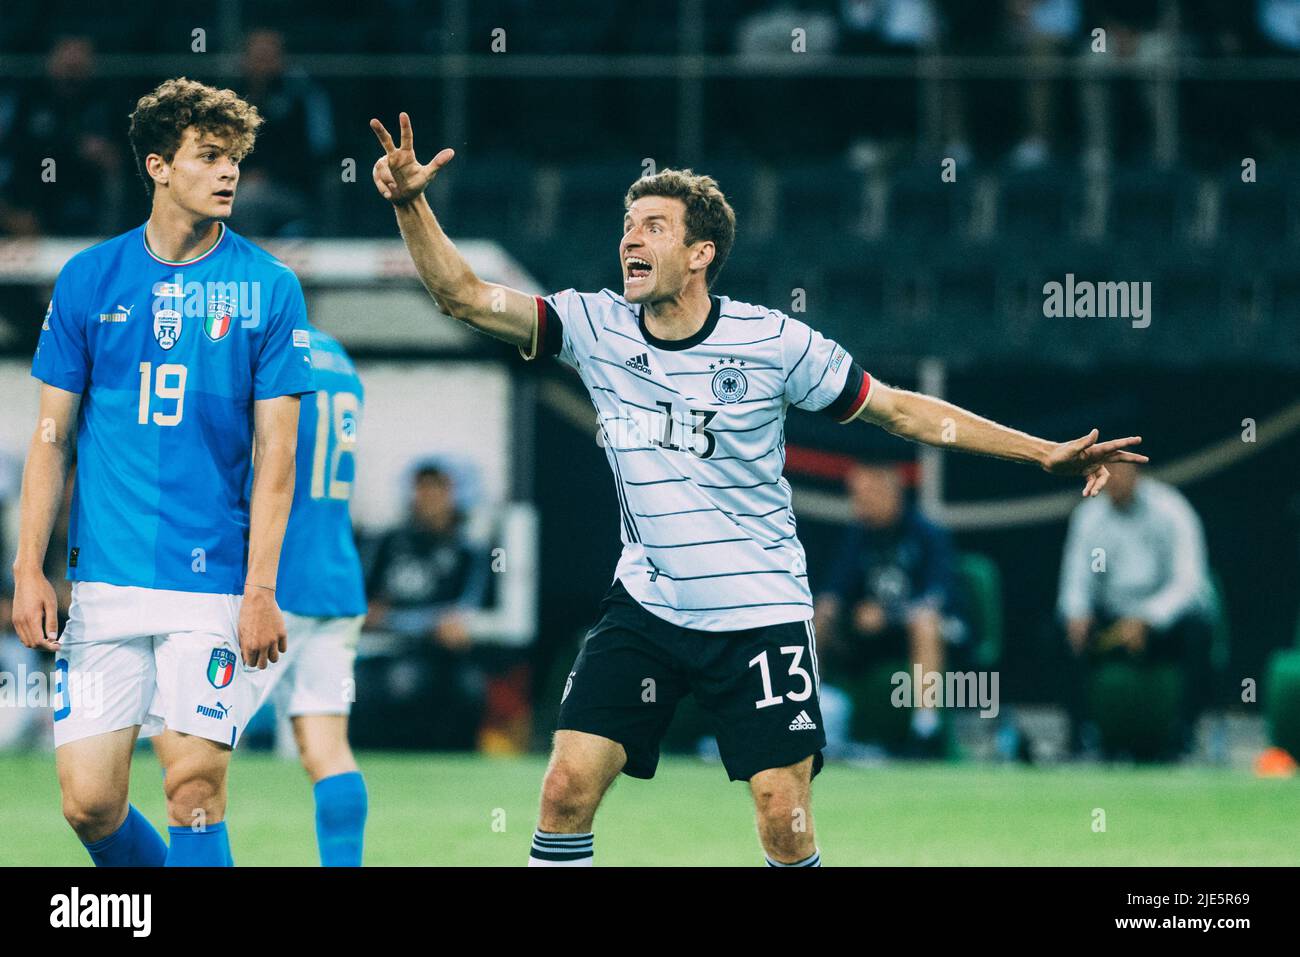 Mönchengladbach, Borussia-Park, 14.06.22: Thomas Müller (Deutschland) gestikuliert beim Länderspiel zwischen Deutschland vs. Italien. Foto: pressefoto M Stockfoto